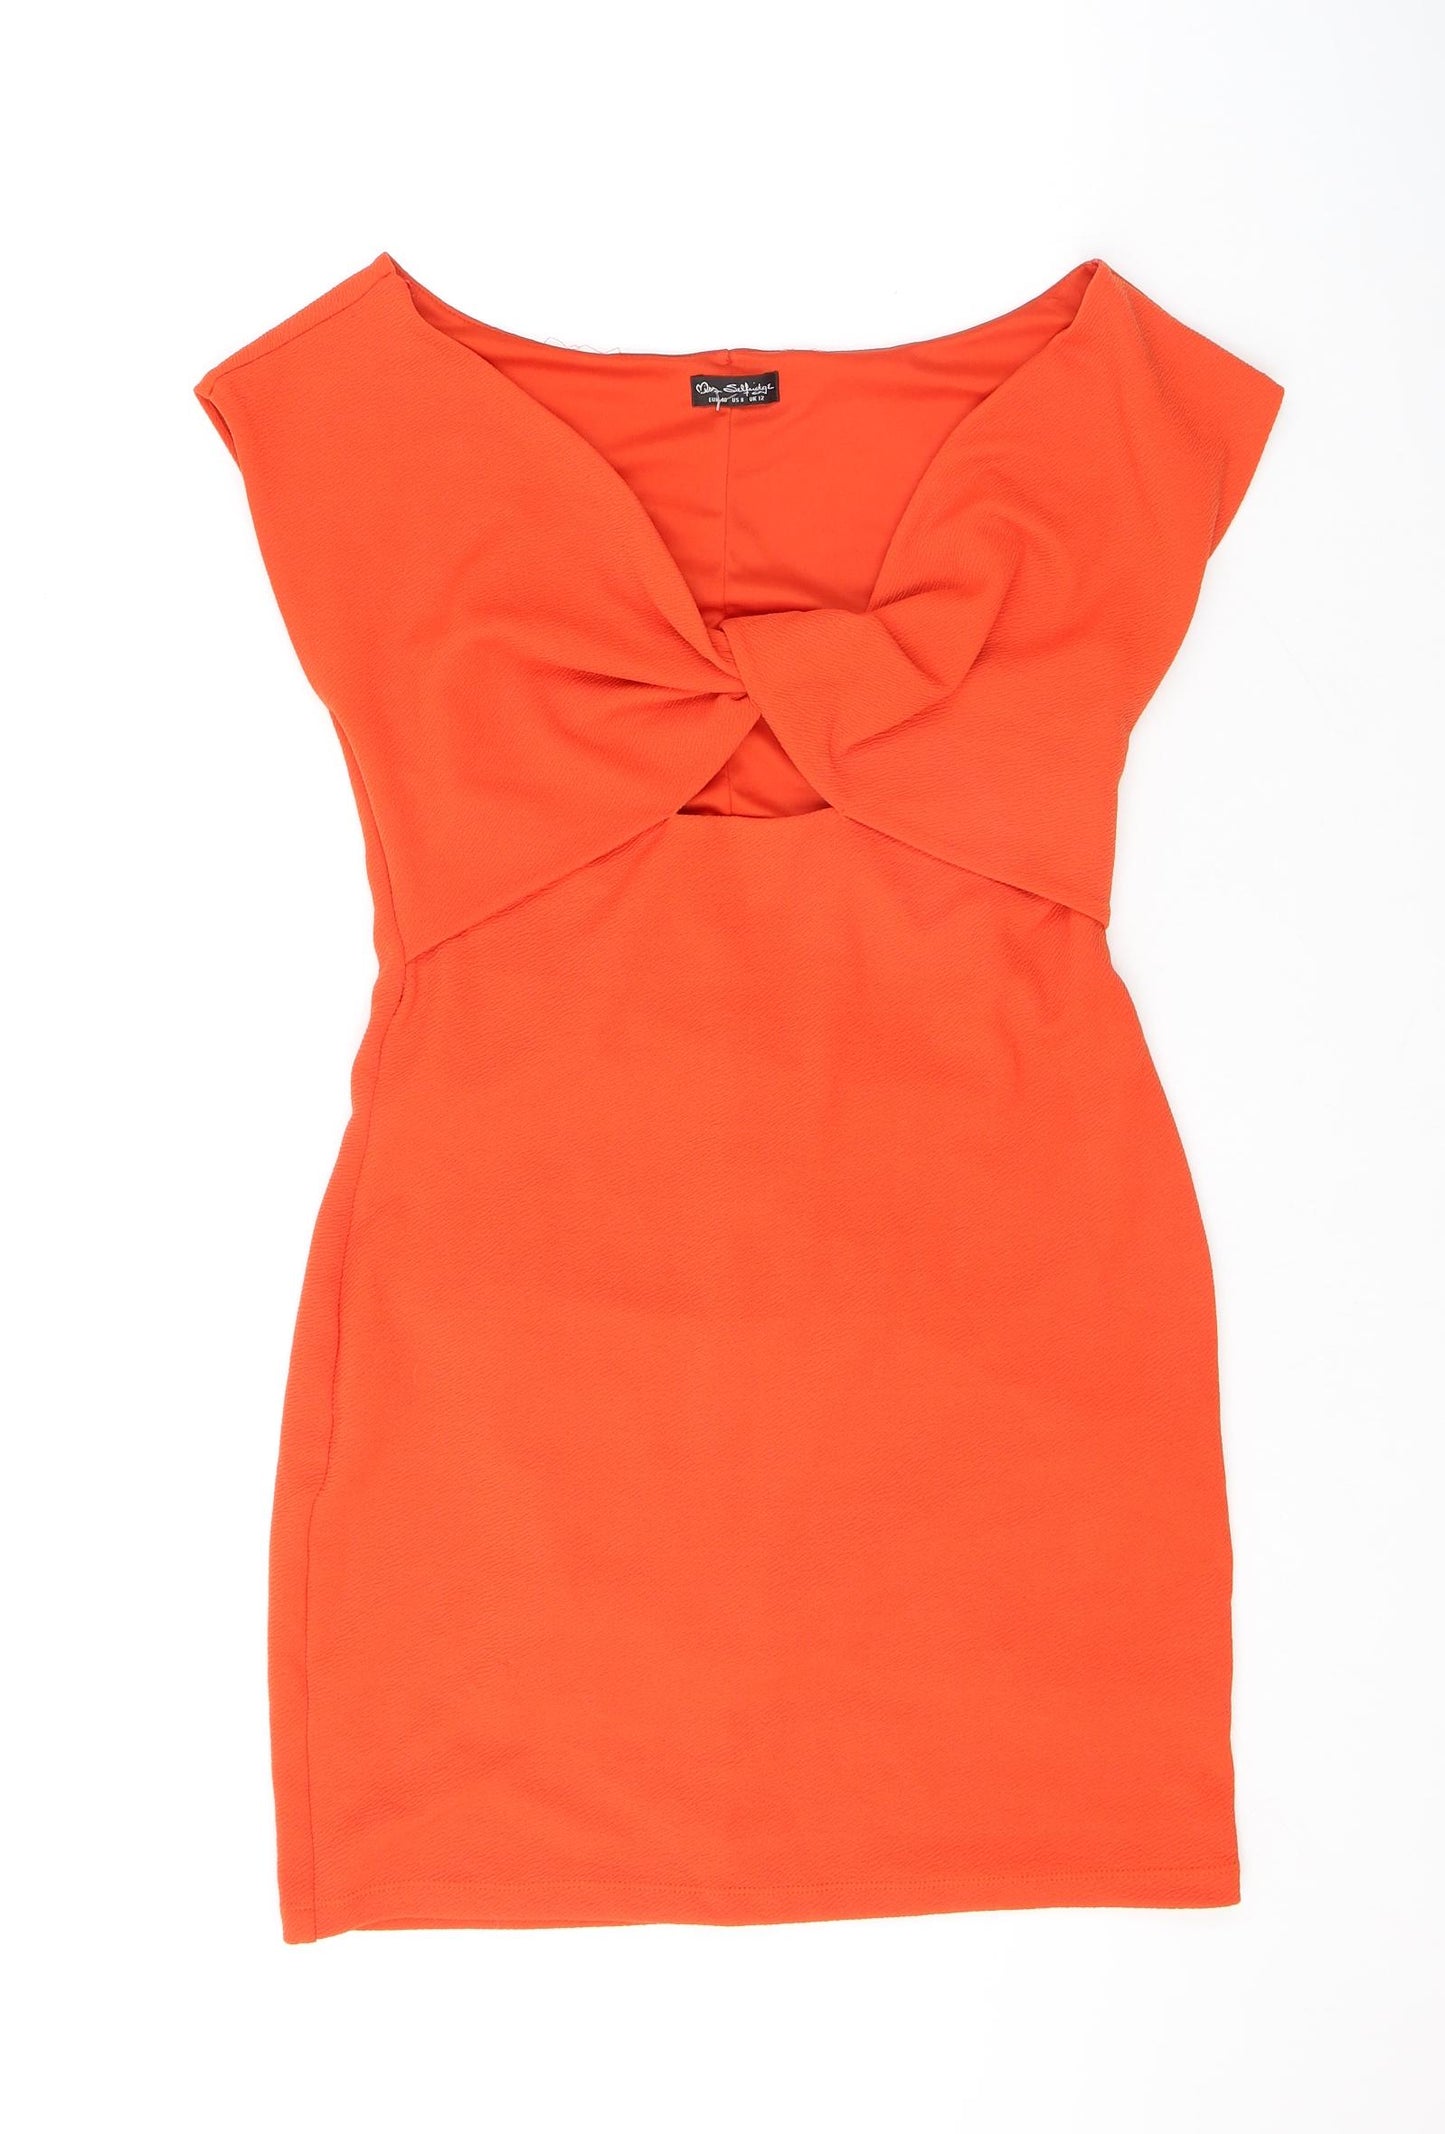 Miss Selfridge Womens Orange Polyester Mini Size 12 V-Neck Pullover